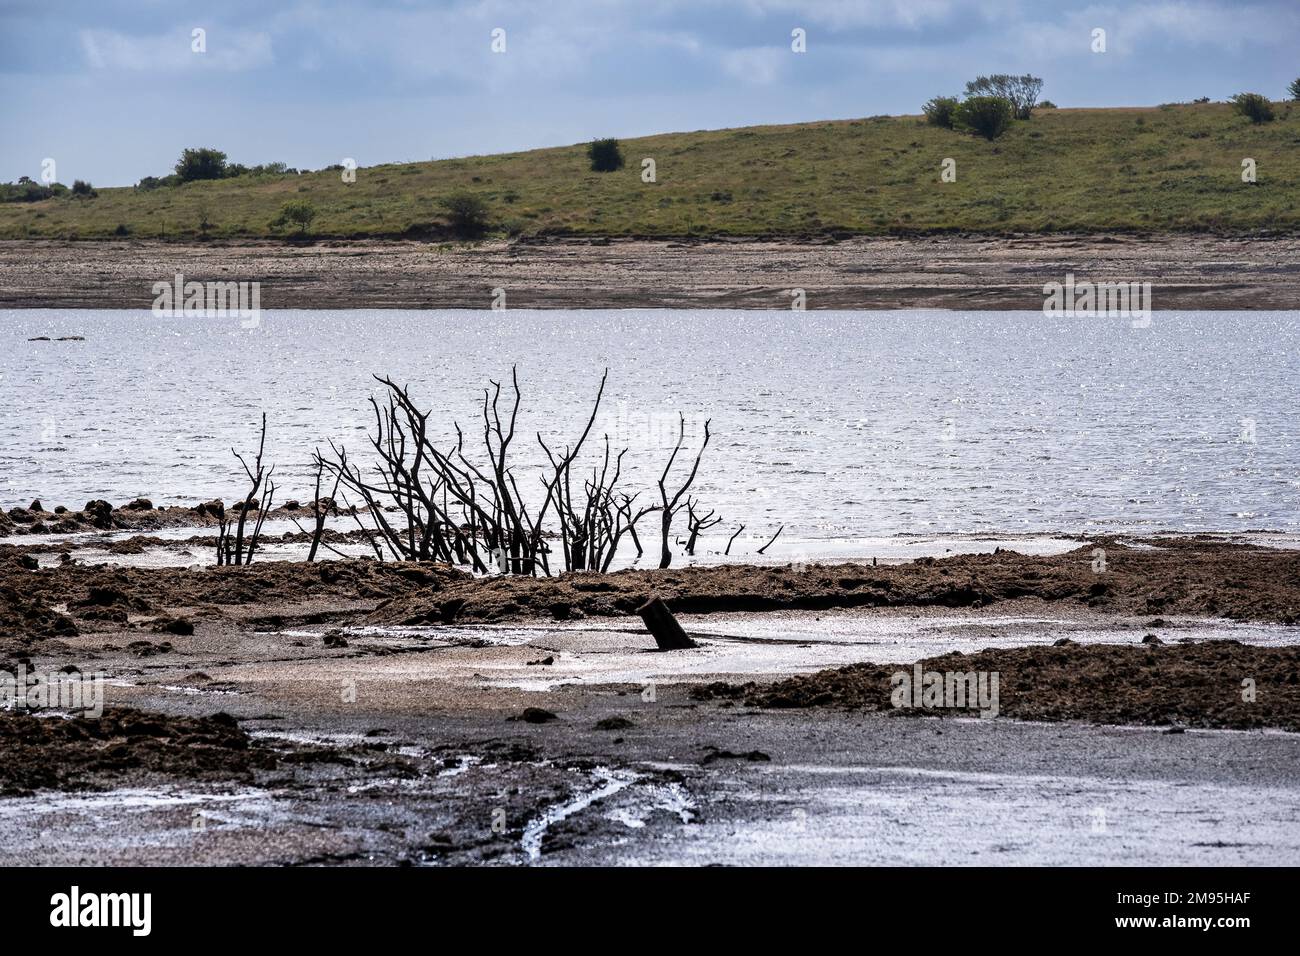 Condizioni di siccità e livelli di acqua in fase di recidivazione esponendo i resti di alberi morti scheletrici a Colliford Lake Reservoir su Bodmin Moor in Cornovaglia nel Foto Stock